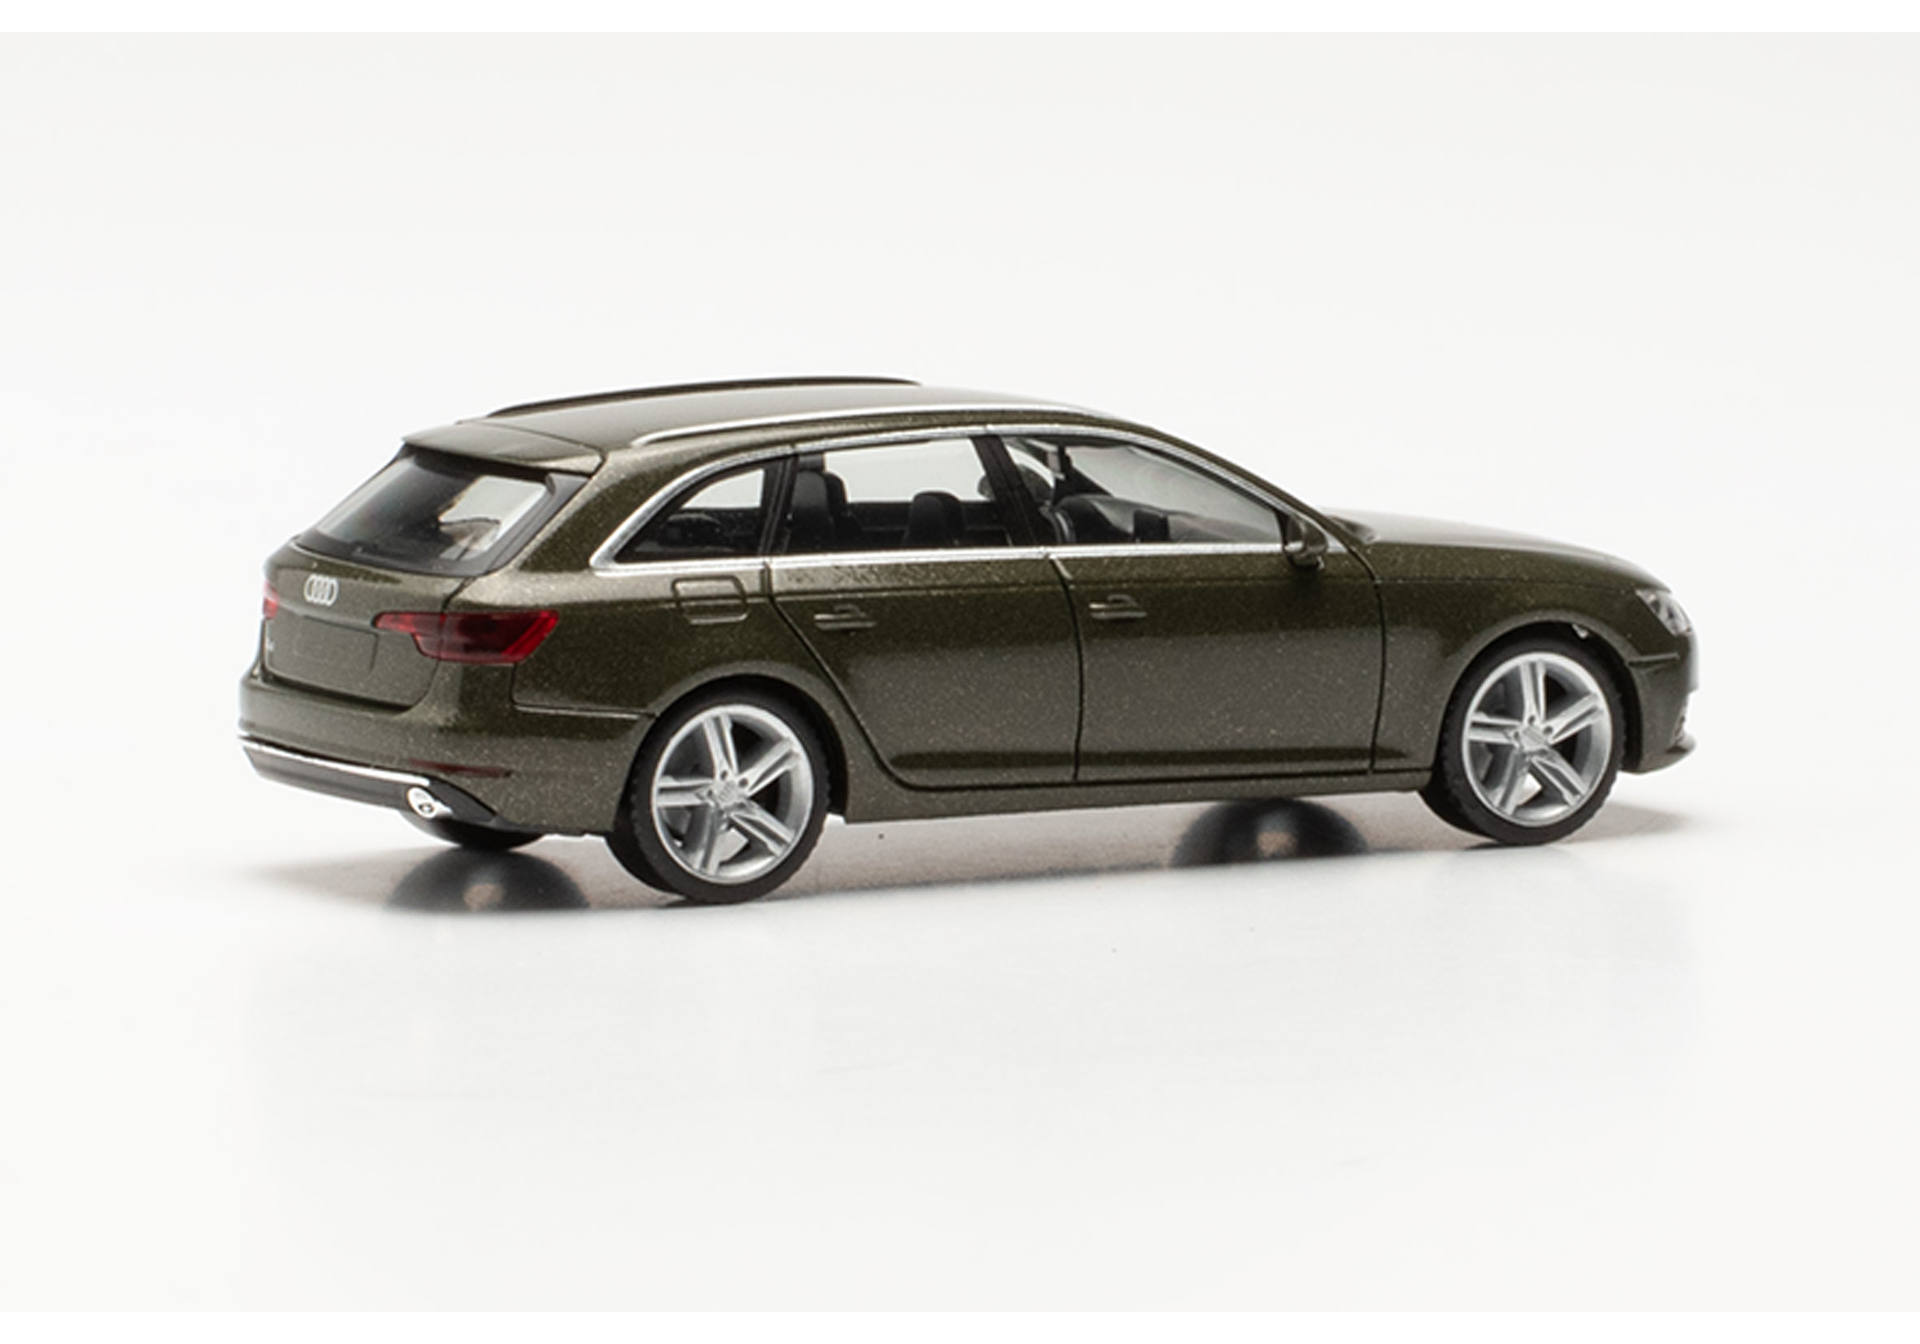 Audi A4 Avant, distriktgrün metallic